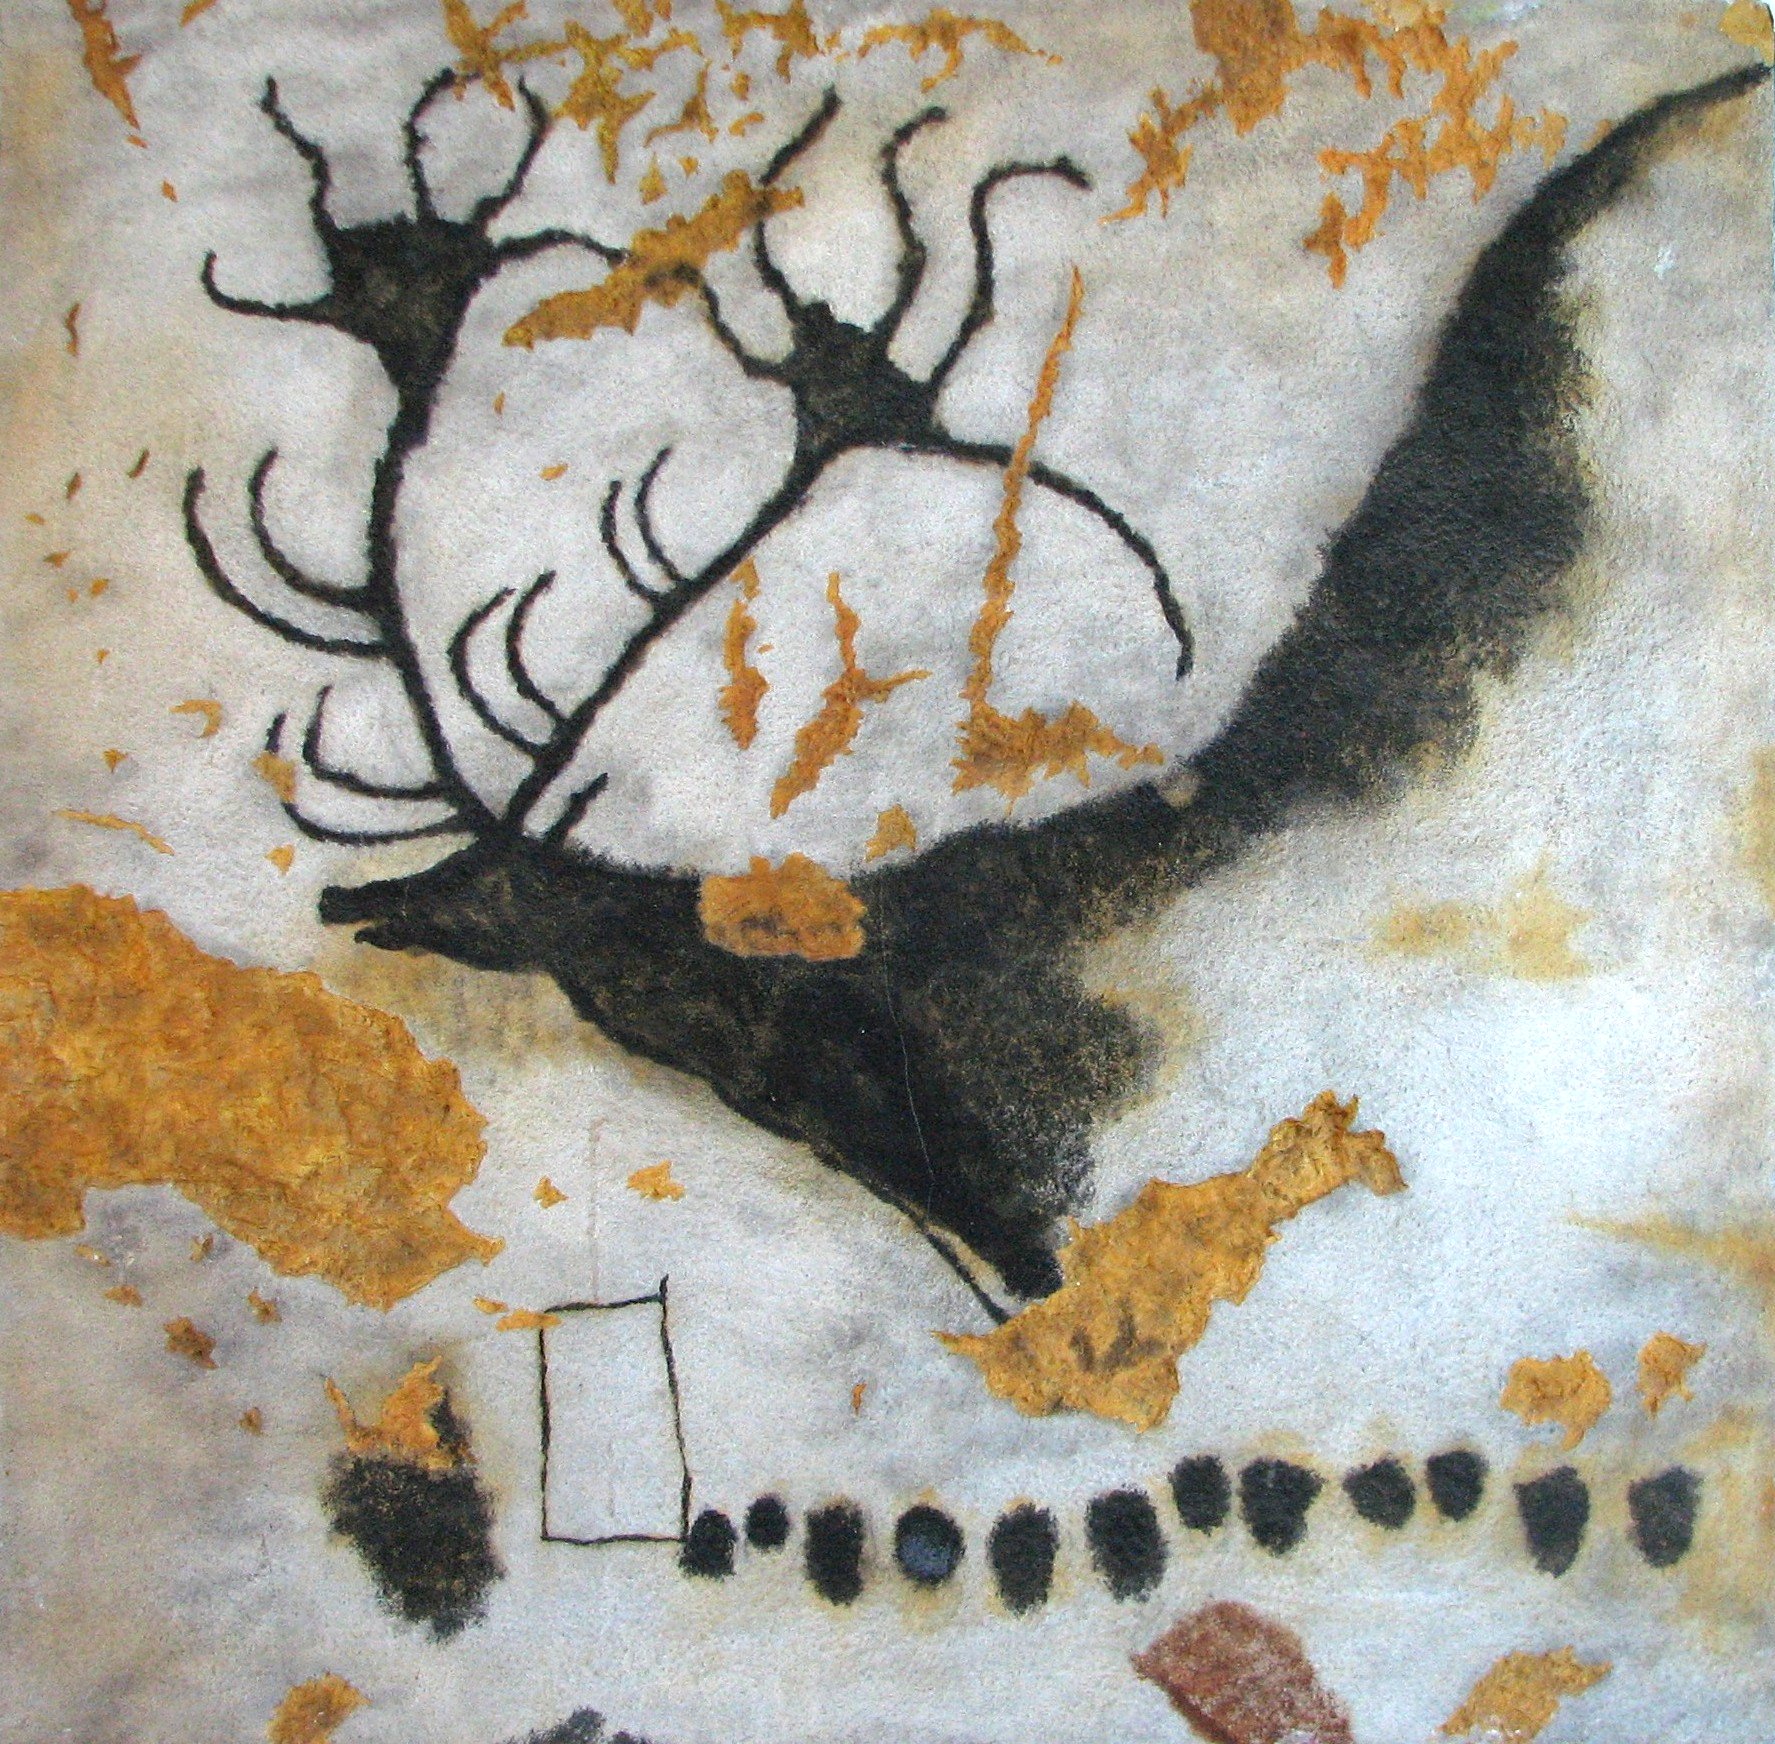 Parmi les espèces animales préhistoriques disparues dont nous gardons traces en art rupestre, vous trouverez le mégalocéros ou mégacéros dont voici une représentation sur les parois de la grotte de Lascaux